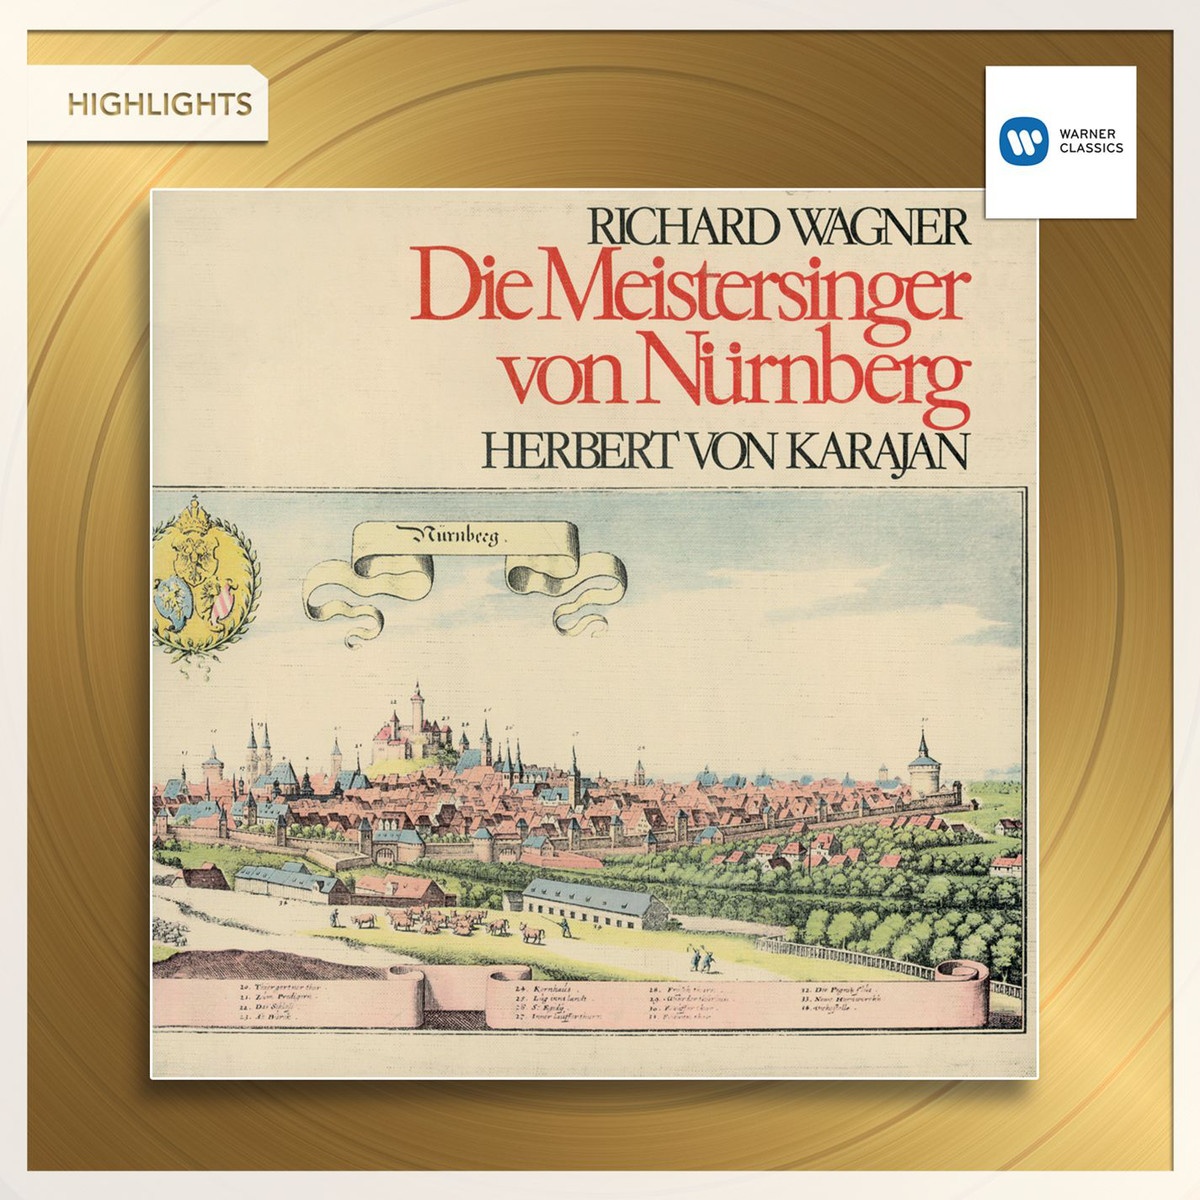 Die Meistersinger von Nürnberg (1999 Digital Remaster), Act One, Scene Two: Mein Herr! der Singer Meister-Schlag (David/Walther)